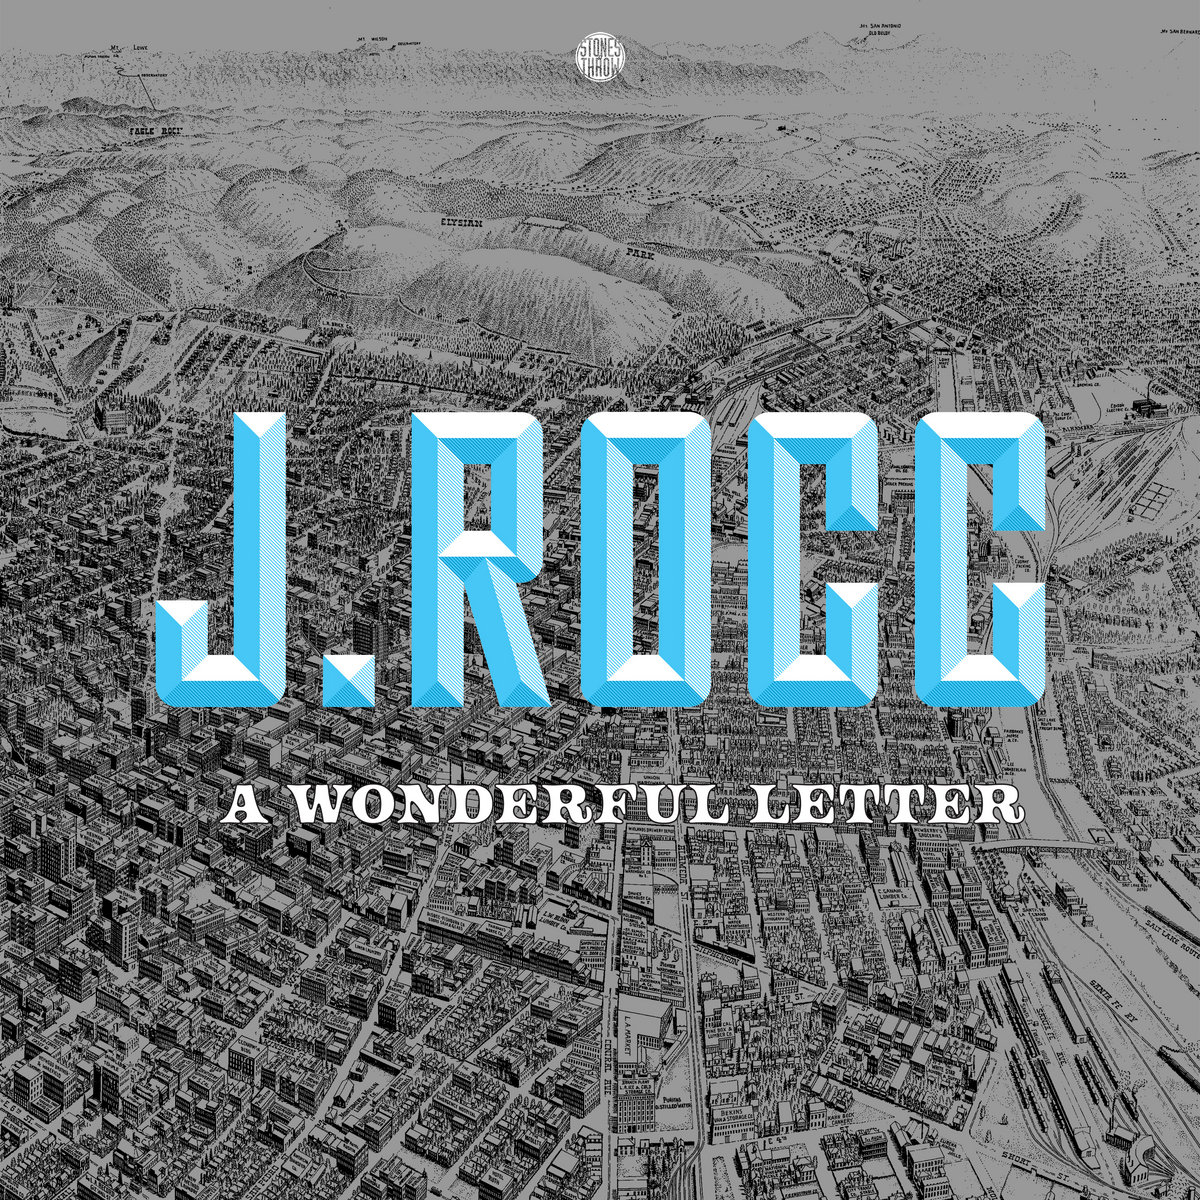 A_wonderful_letter_j._rocc